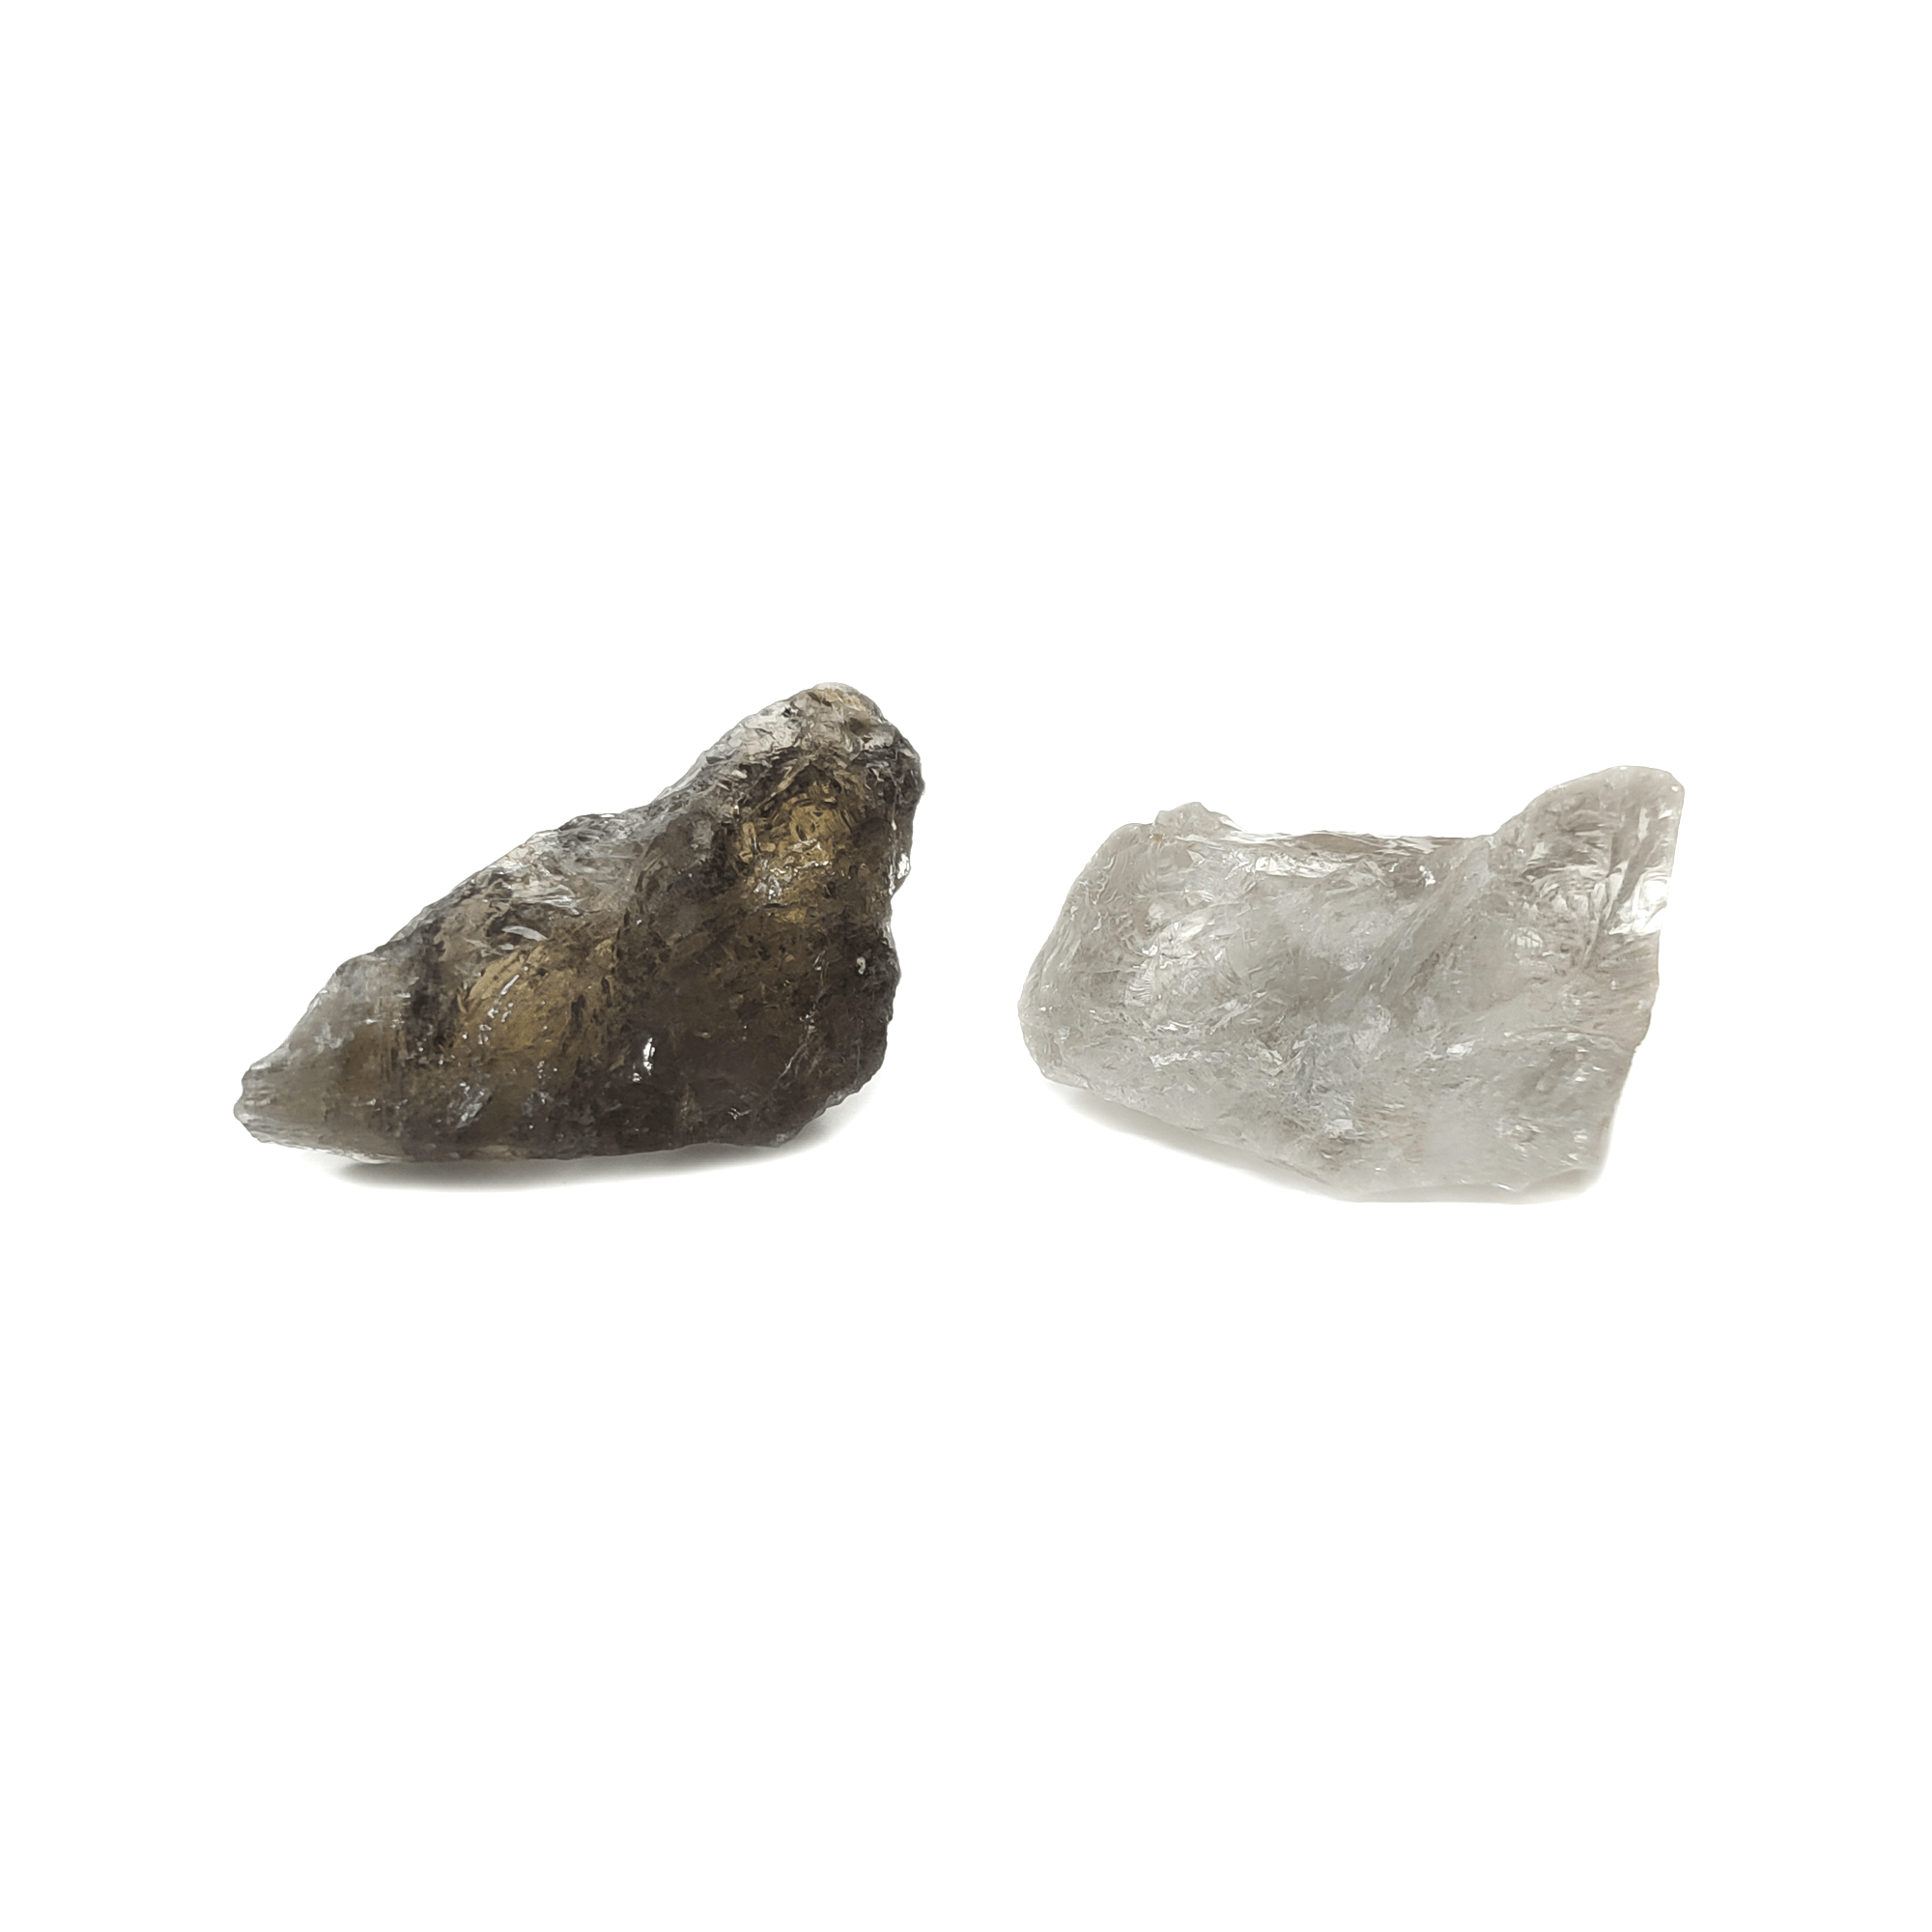 Produktpräsentation von zwei Rauchquarz Rohsteinen. Der eine Stein ist dunkel, der andere Edelstein ist hell.